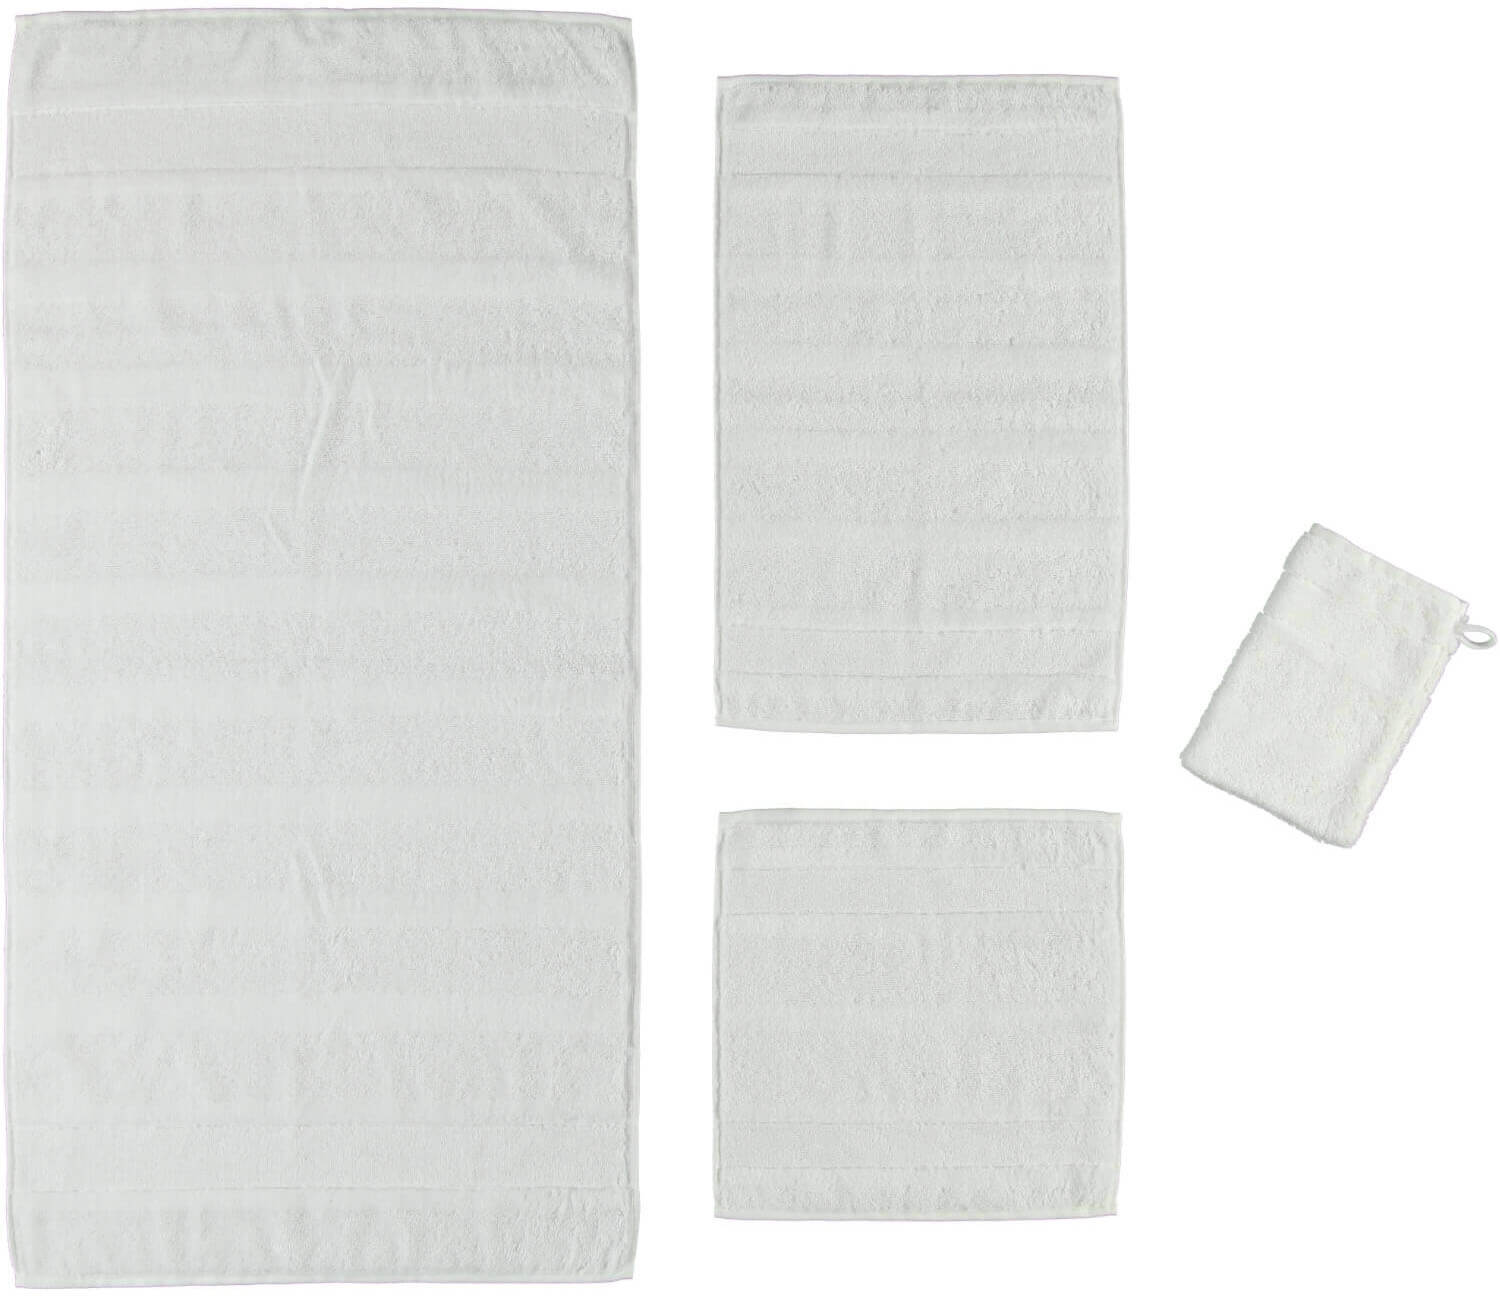 Хлопковое полотенце Noblesse Uni Weib ☞ Размер: 30 x 50 см